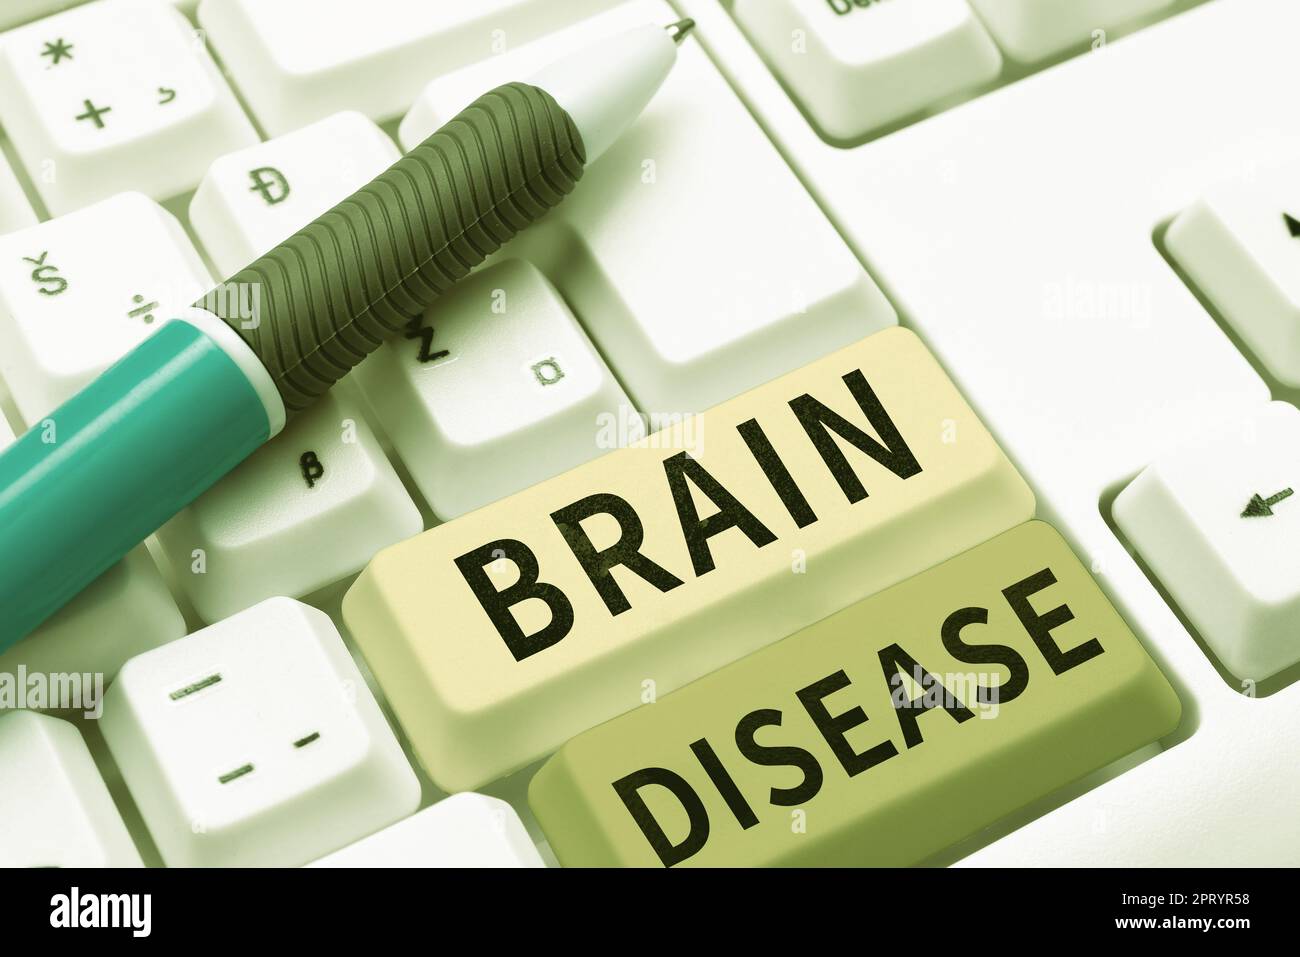 Visualizzazione concettuale Brain Disease, Business idea una malattia neurologica che deteriora il sistema s è nervi Foto Stock